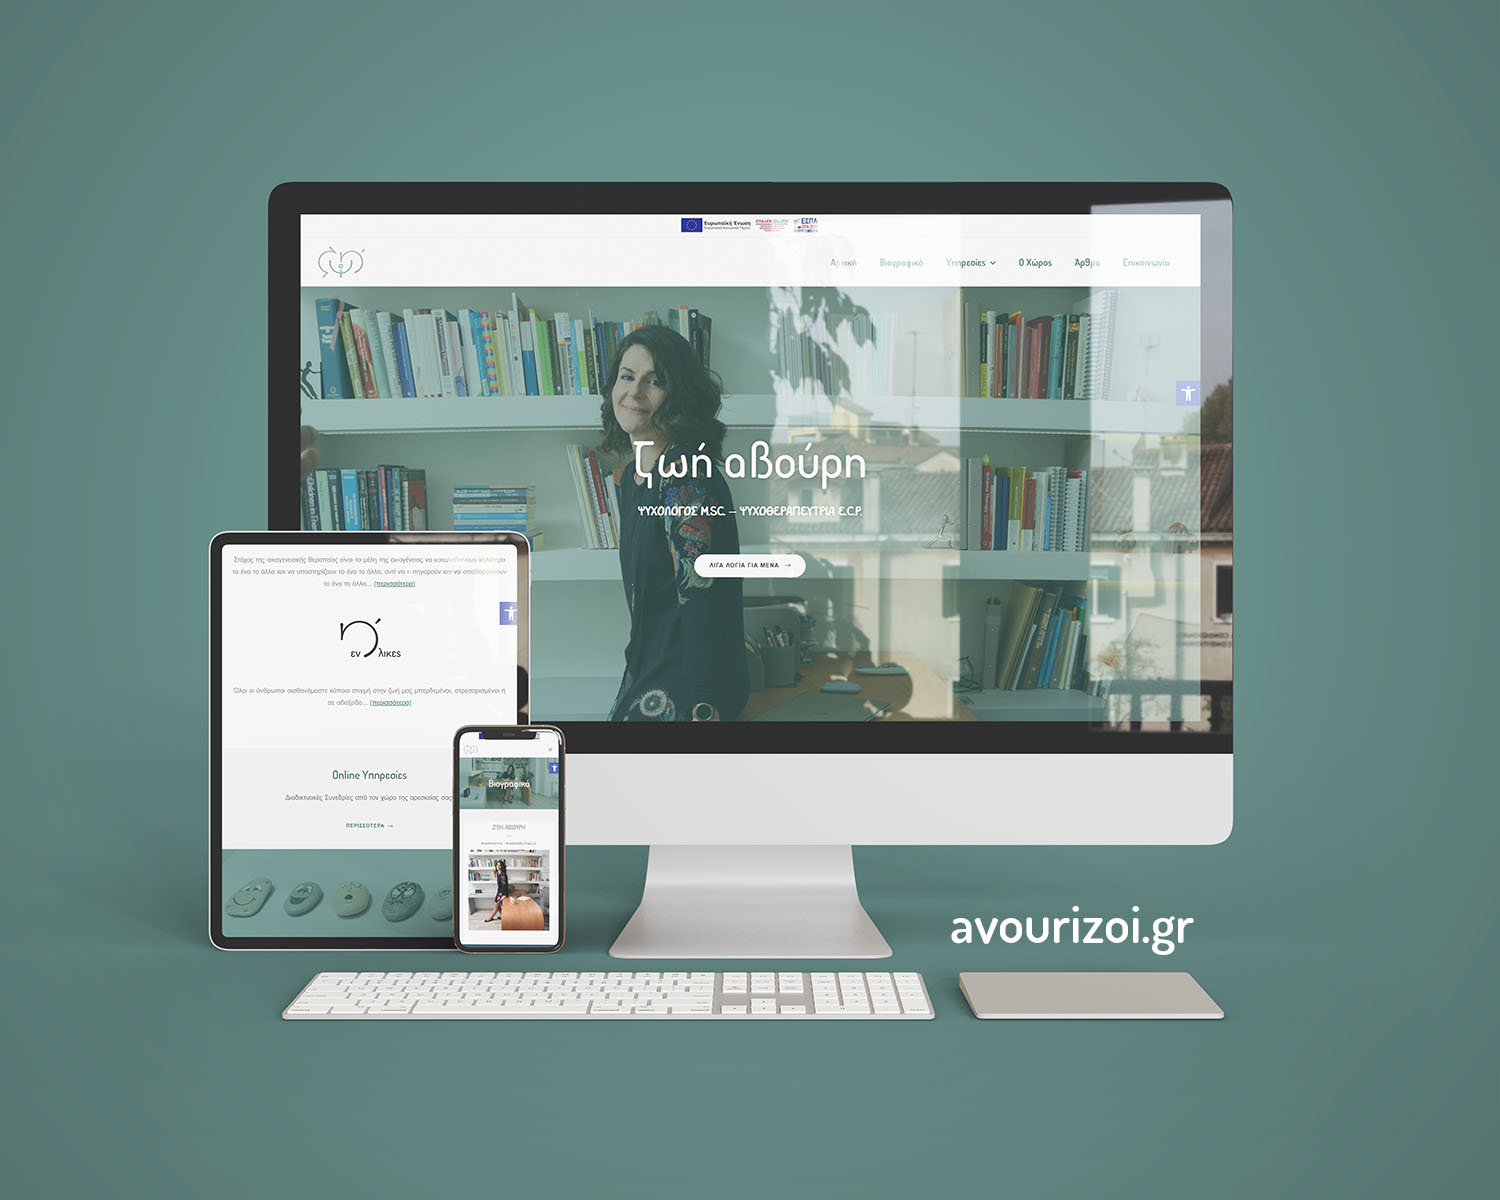 avourizoi.gr – Ιστοσελίδα